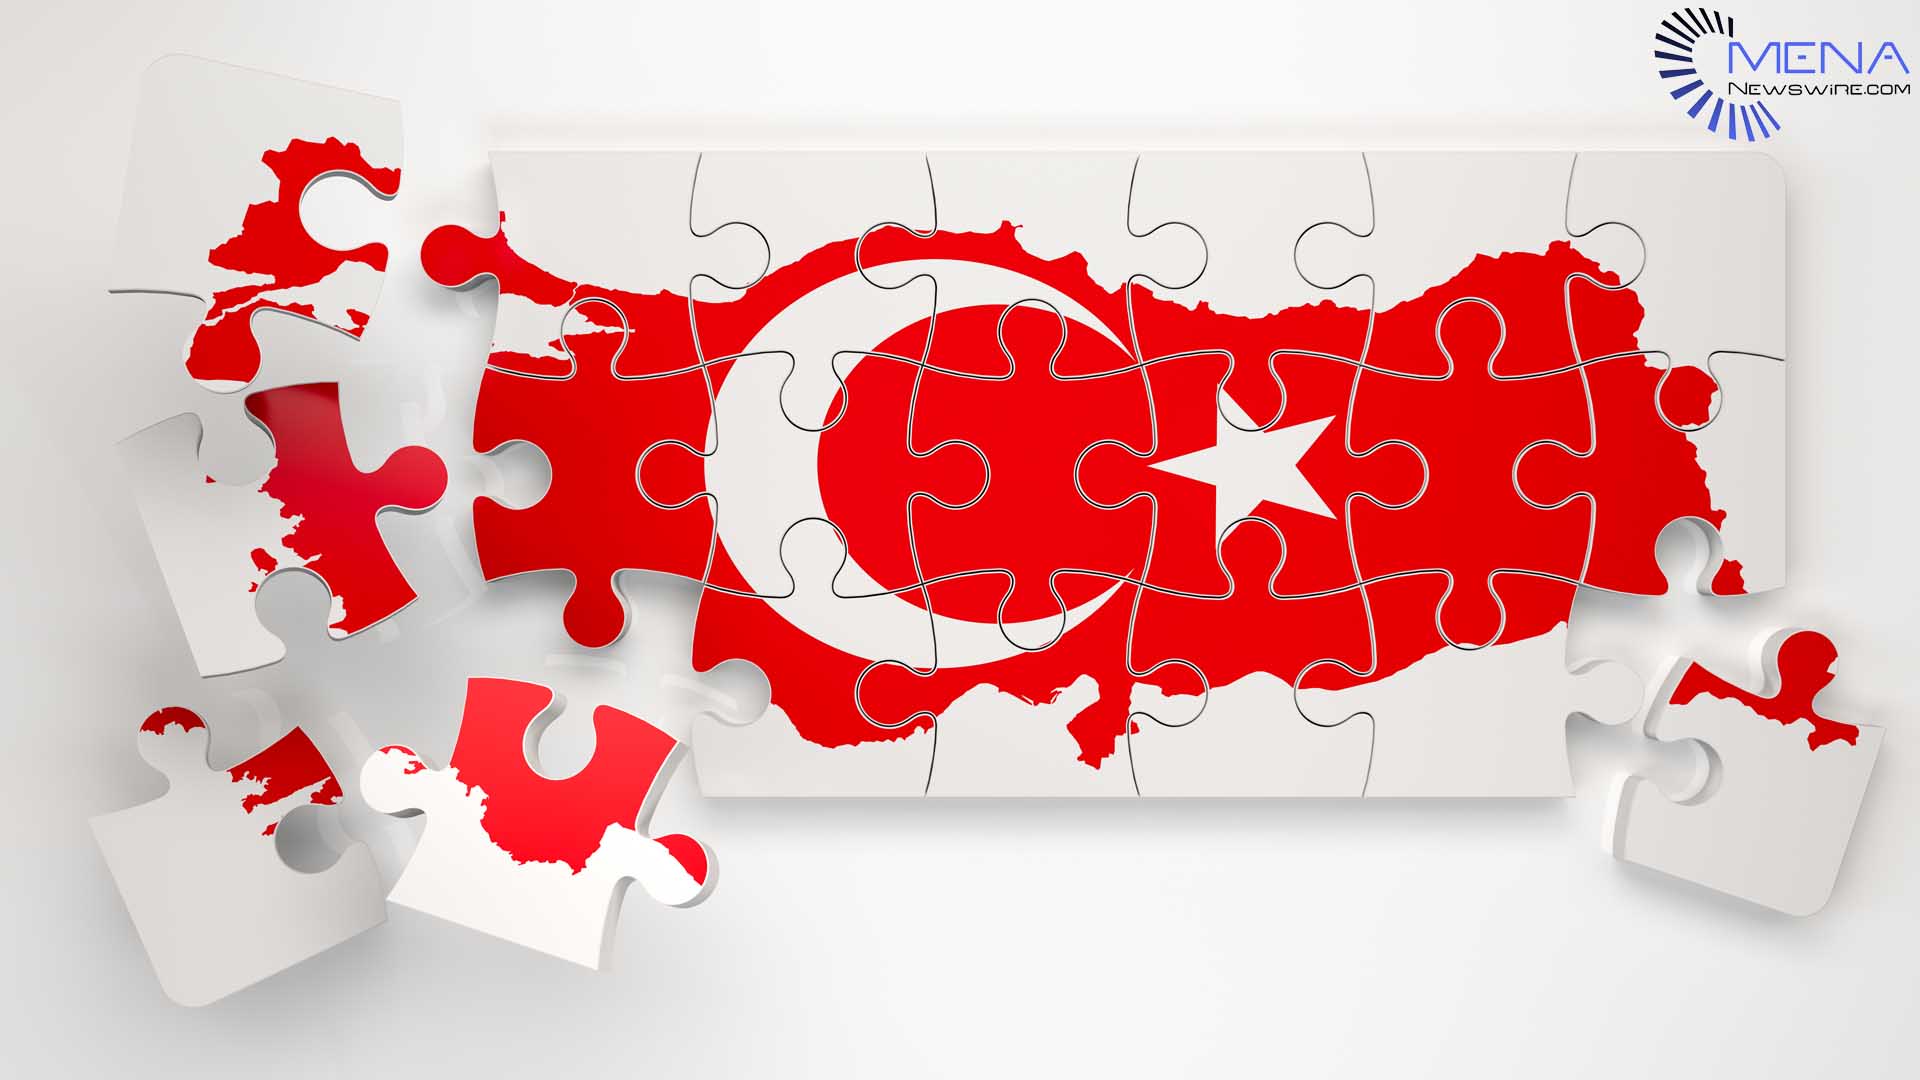 MENA न्यूजवायर ने तुर्की समाचार वितरण के साथ नई जमीन तोड़ी